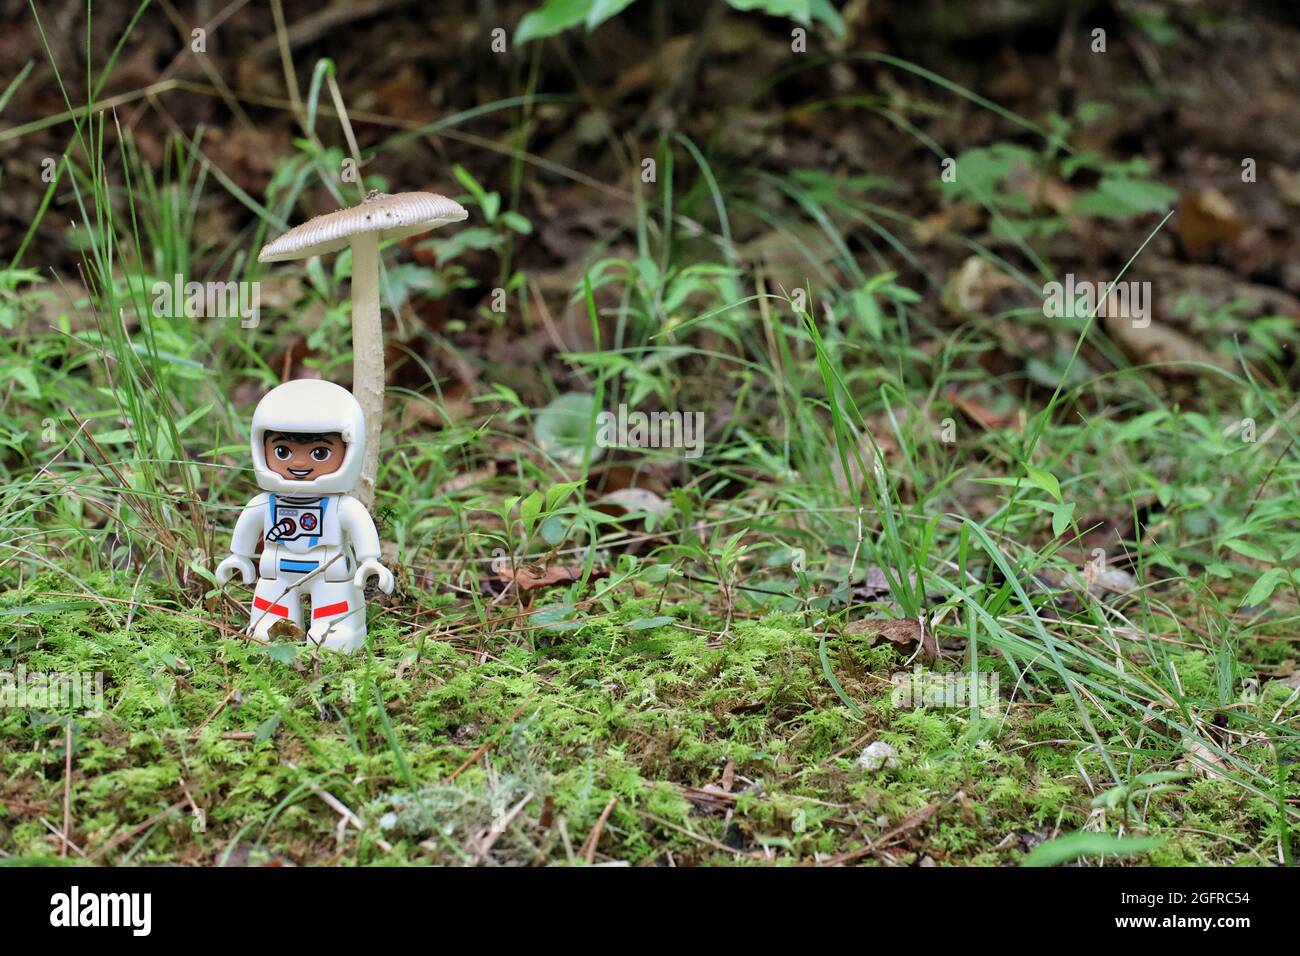 GREENVILLE, STATI UNITI d'AMERICA - 31 luglio 2021: Un primo colpo di una figura di astronauta giocattolo Lego sull'erba Foto Stock